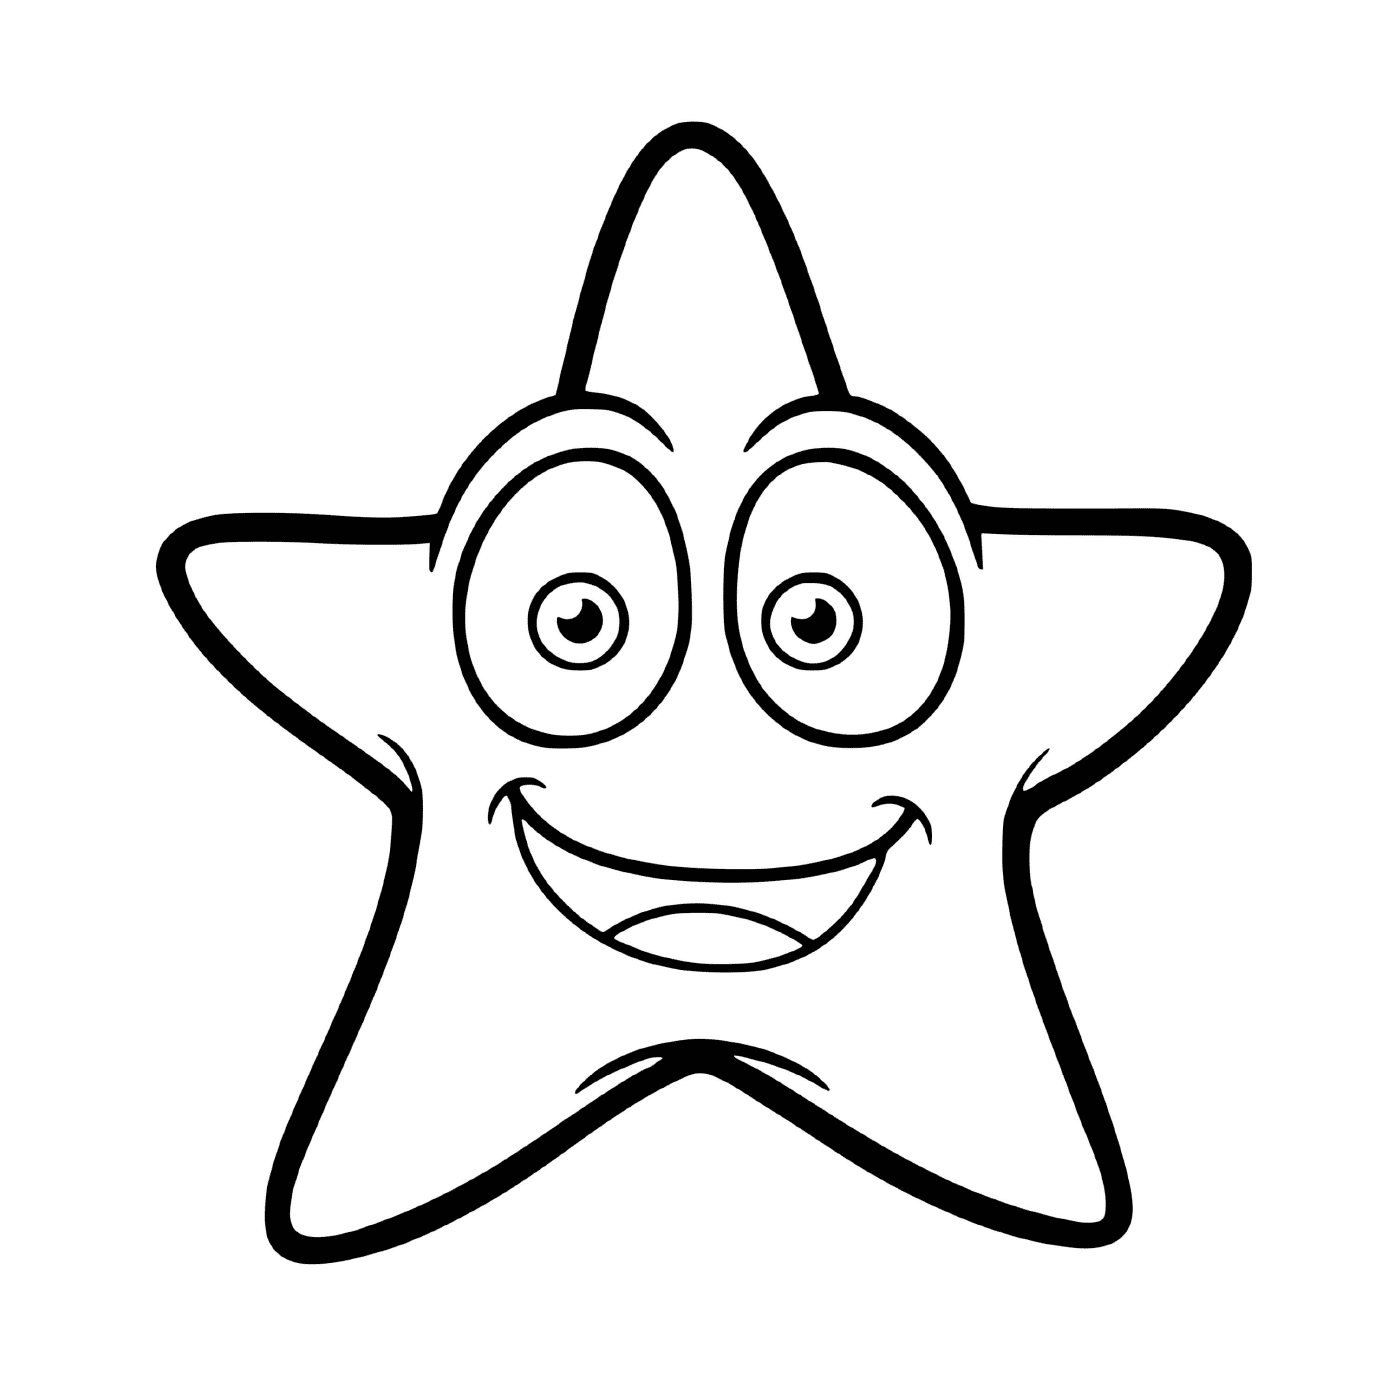   Une étoile de mer souriante parmi les animaux marins 